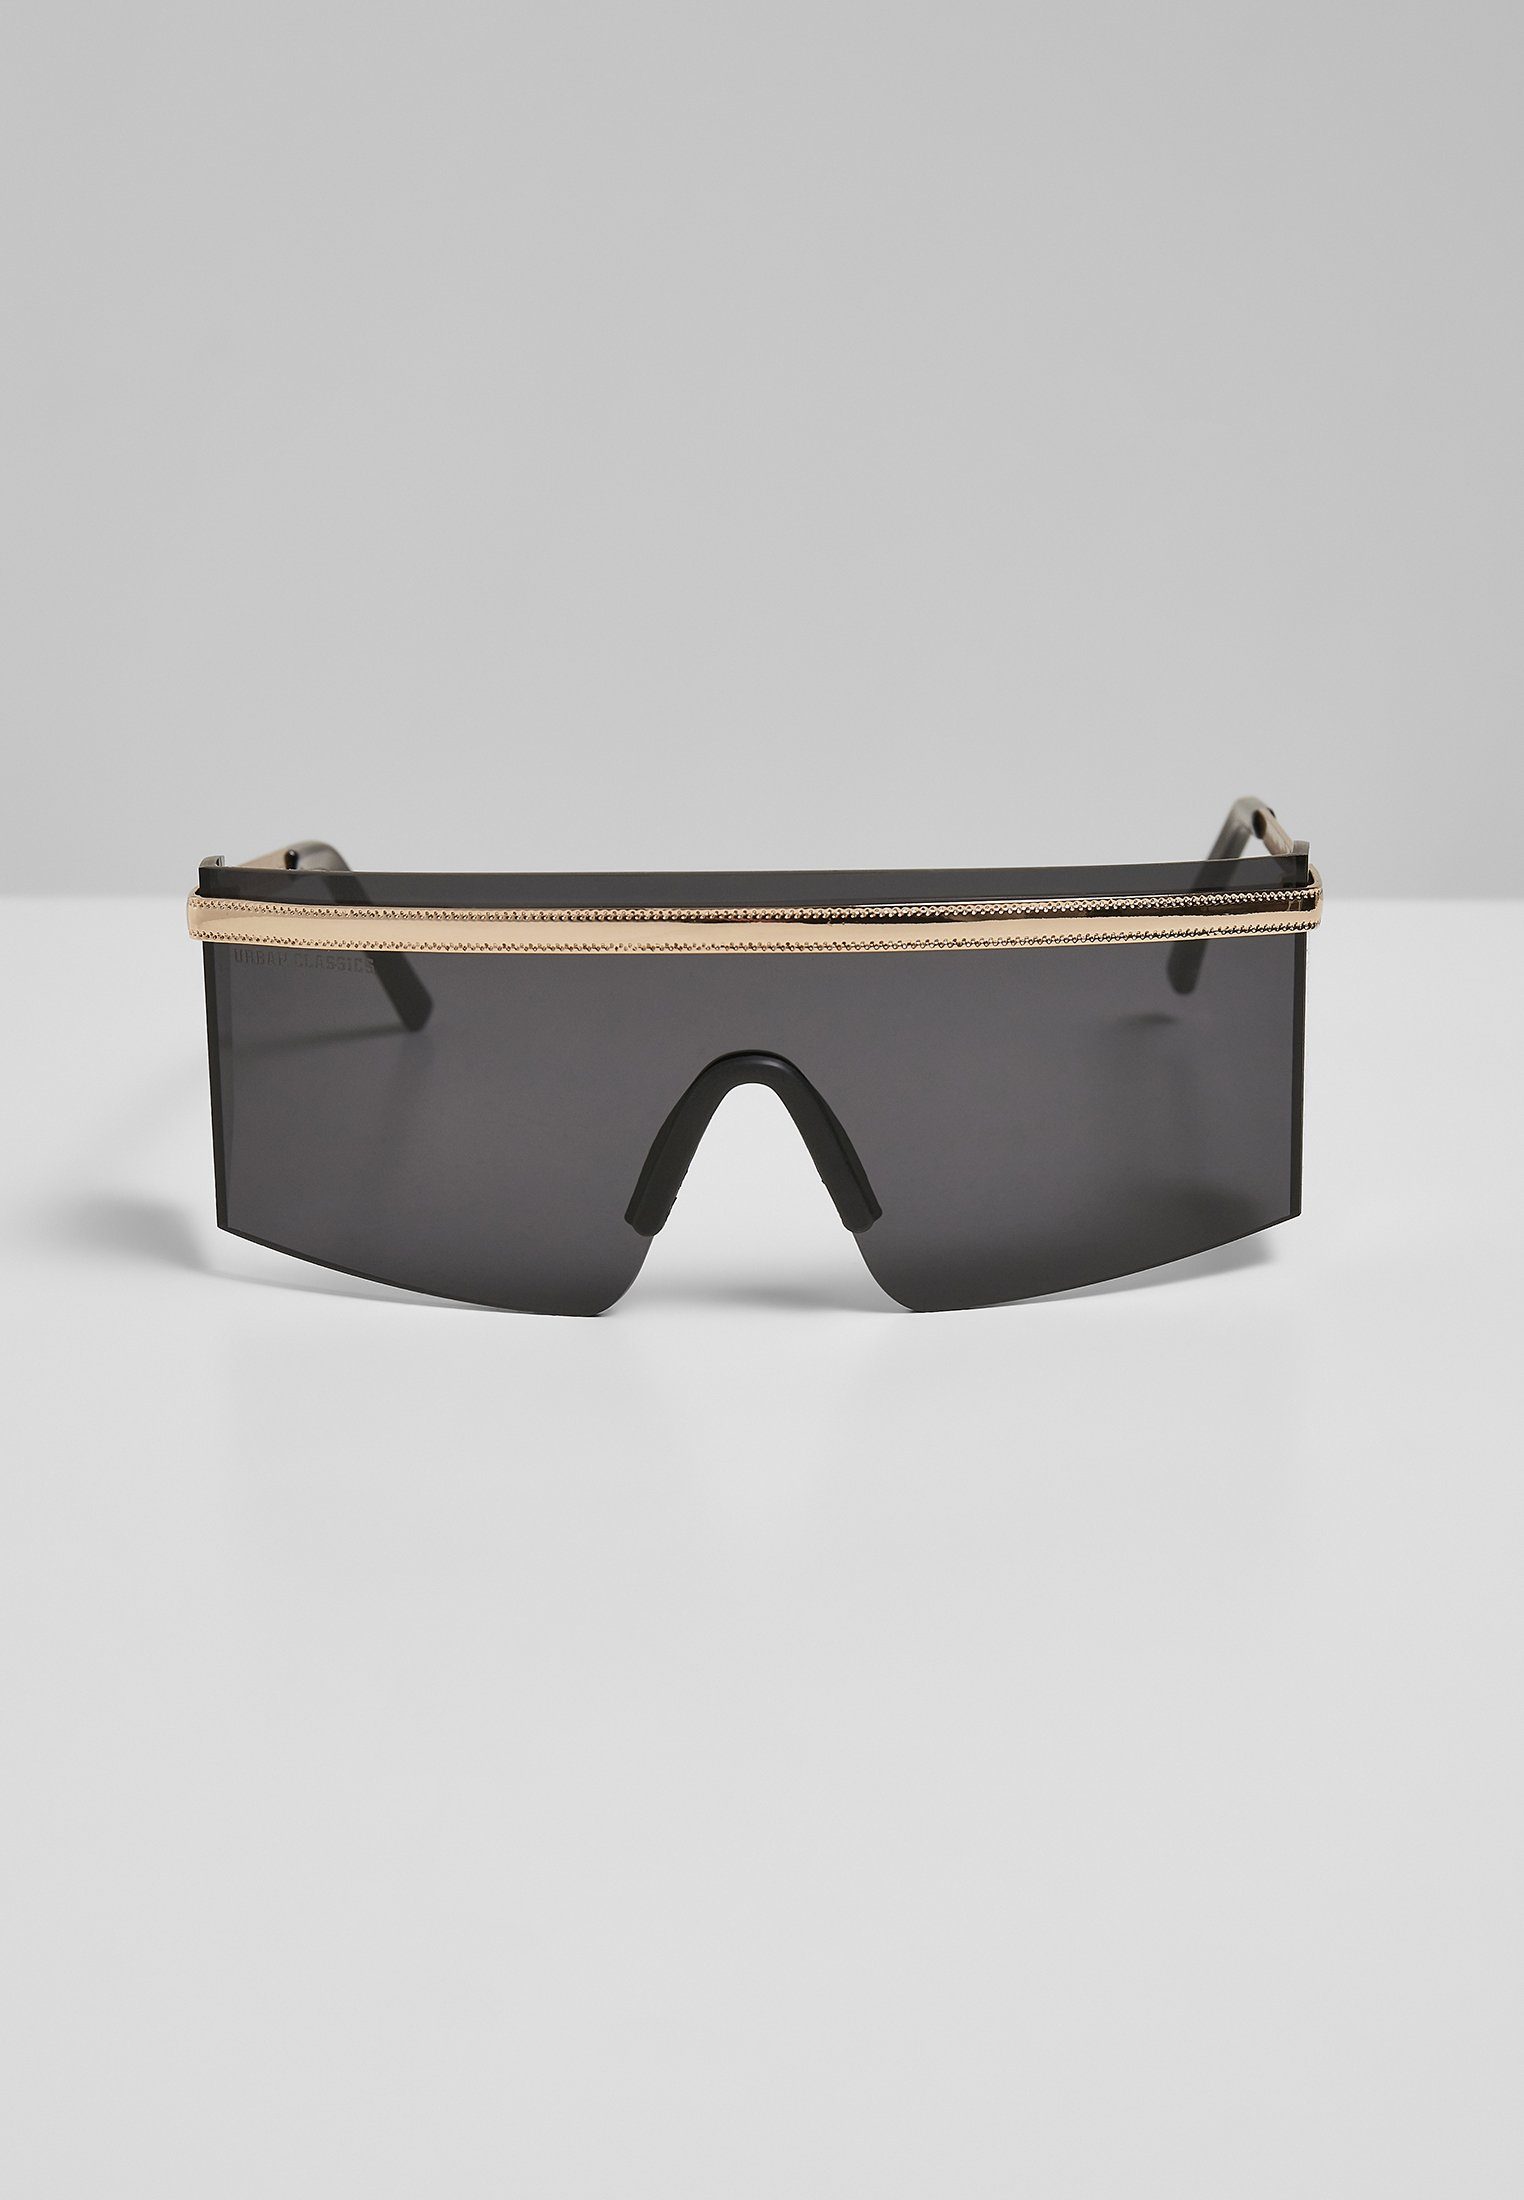 URBAN Sonnenbrille Sardinia Unisex CLASSICS Sunglasses